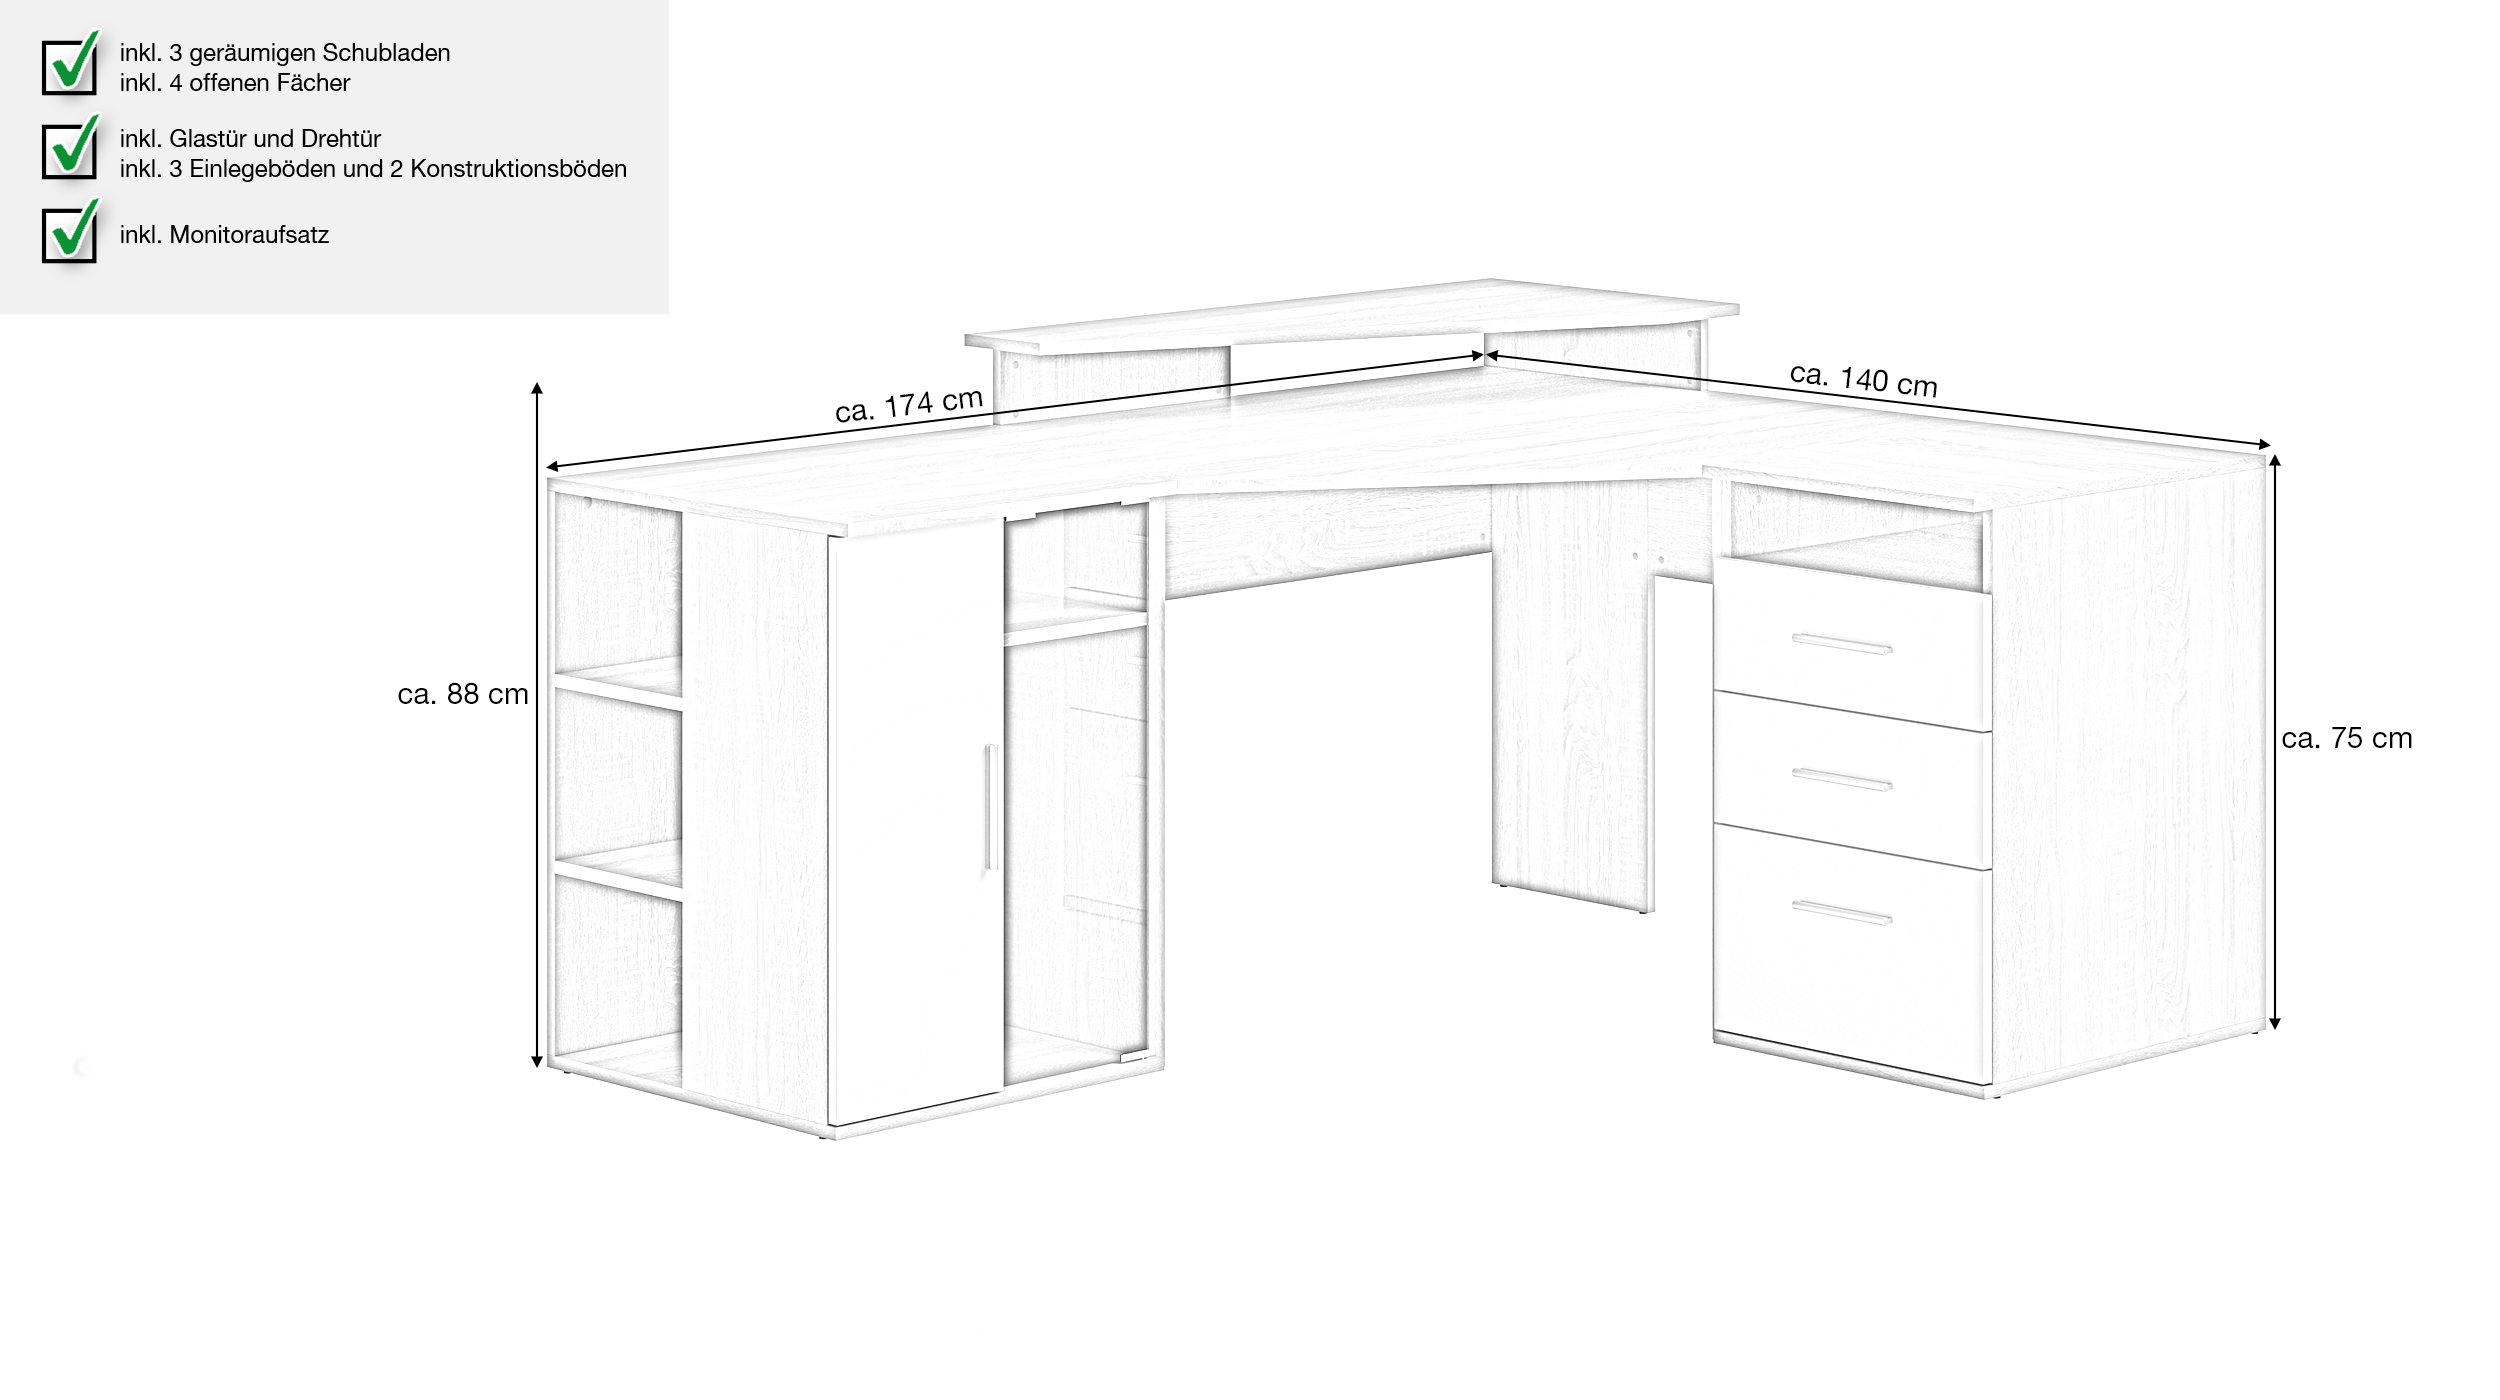 Eck-Schreibtisch Sonoma Eiche - weiß 174 cm - EFFECT